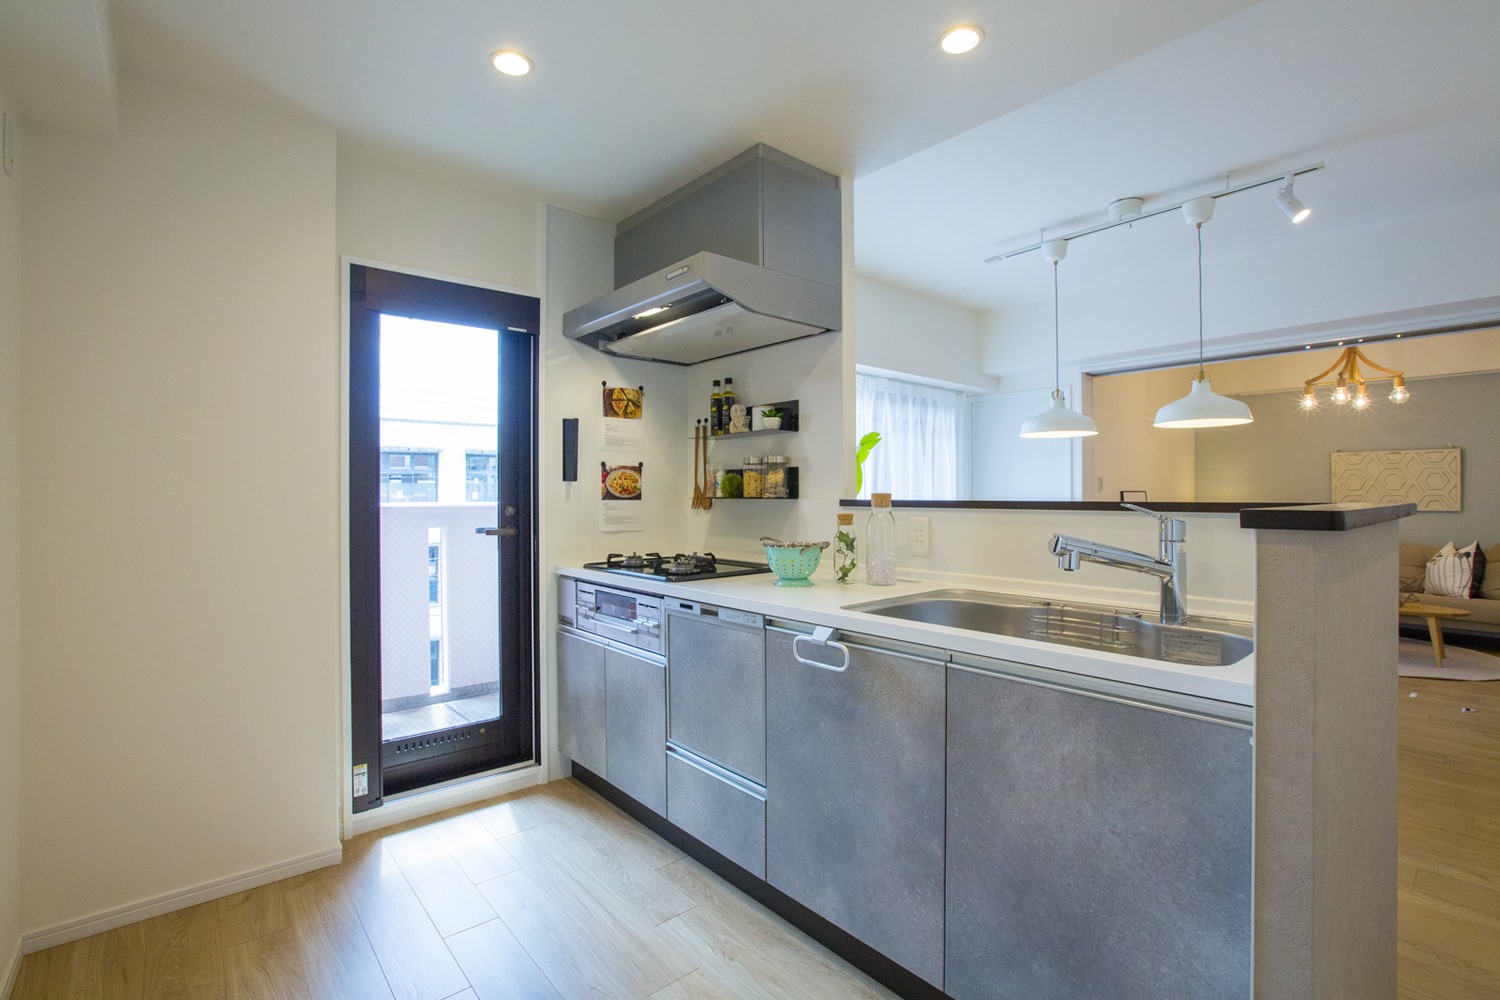 広々としたキッチンは食器棚を配置しやすく、バルコニーにも出られます。(2021年10月)